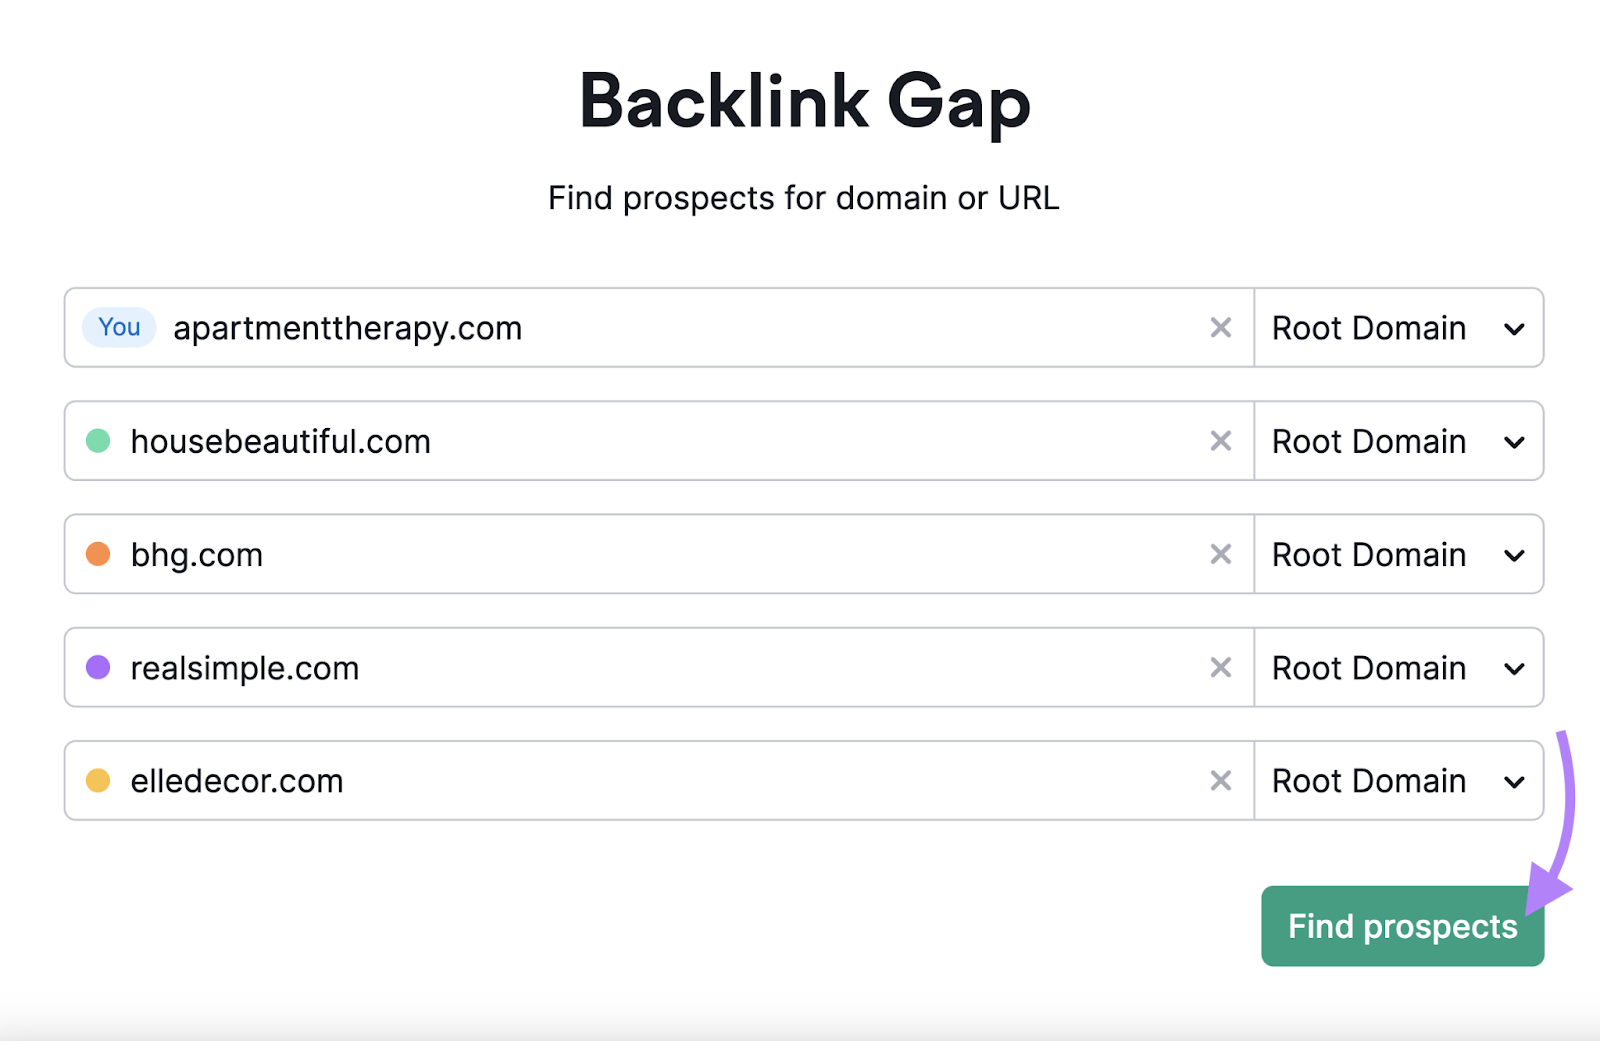 Backlink Gap tool search